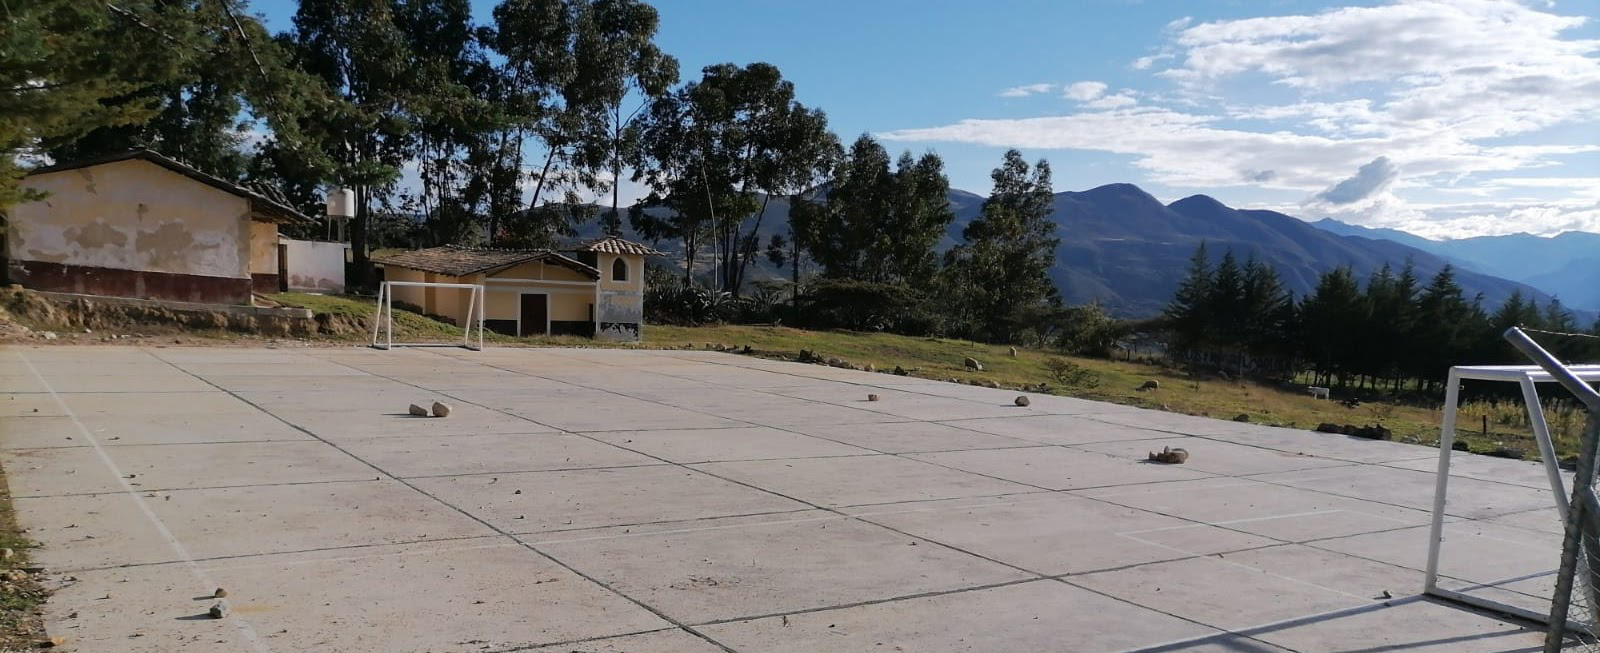 Vallicopampa 8​es un caserío peruano del distrito de Pedro Gálvez, provincia de San Marcos (Cajamarca). Cuenta con 115 viviendas9​, una población de 137 habitantes y se localiza a una elevación de 2650 msnm.